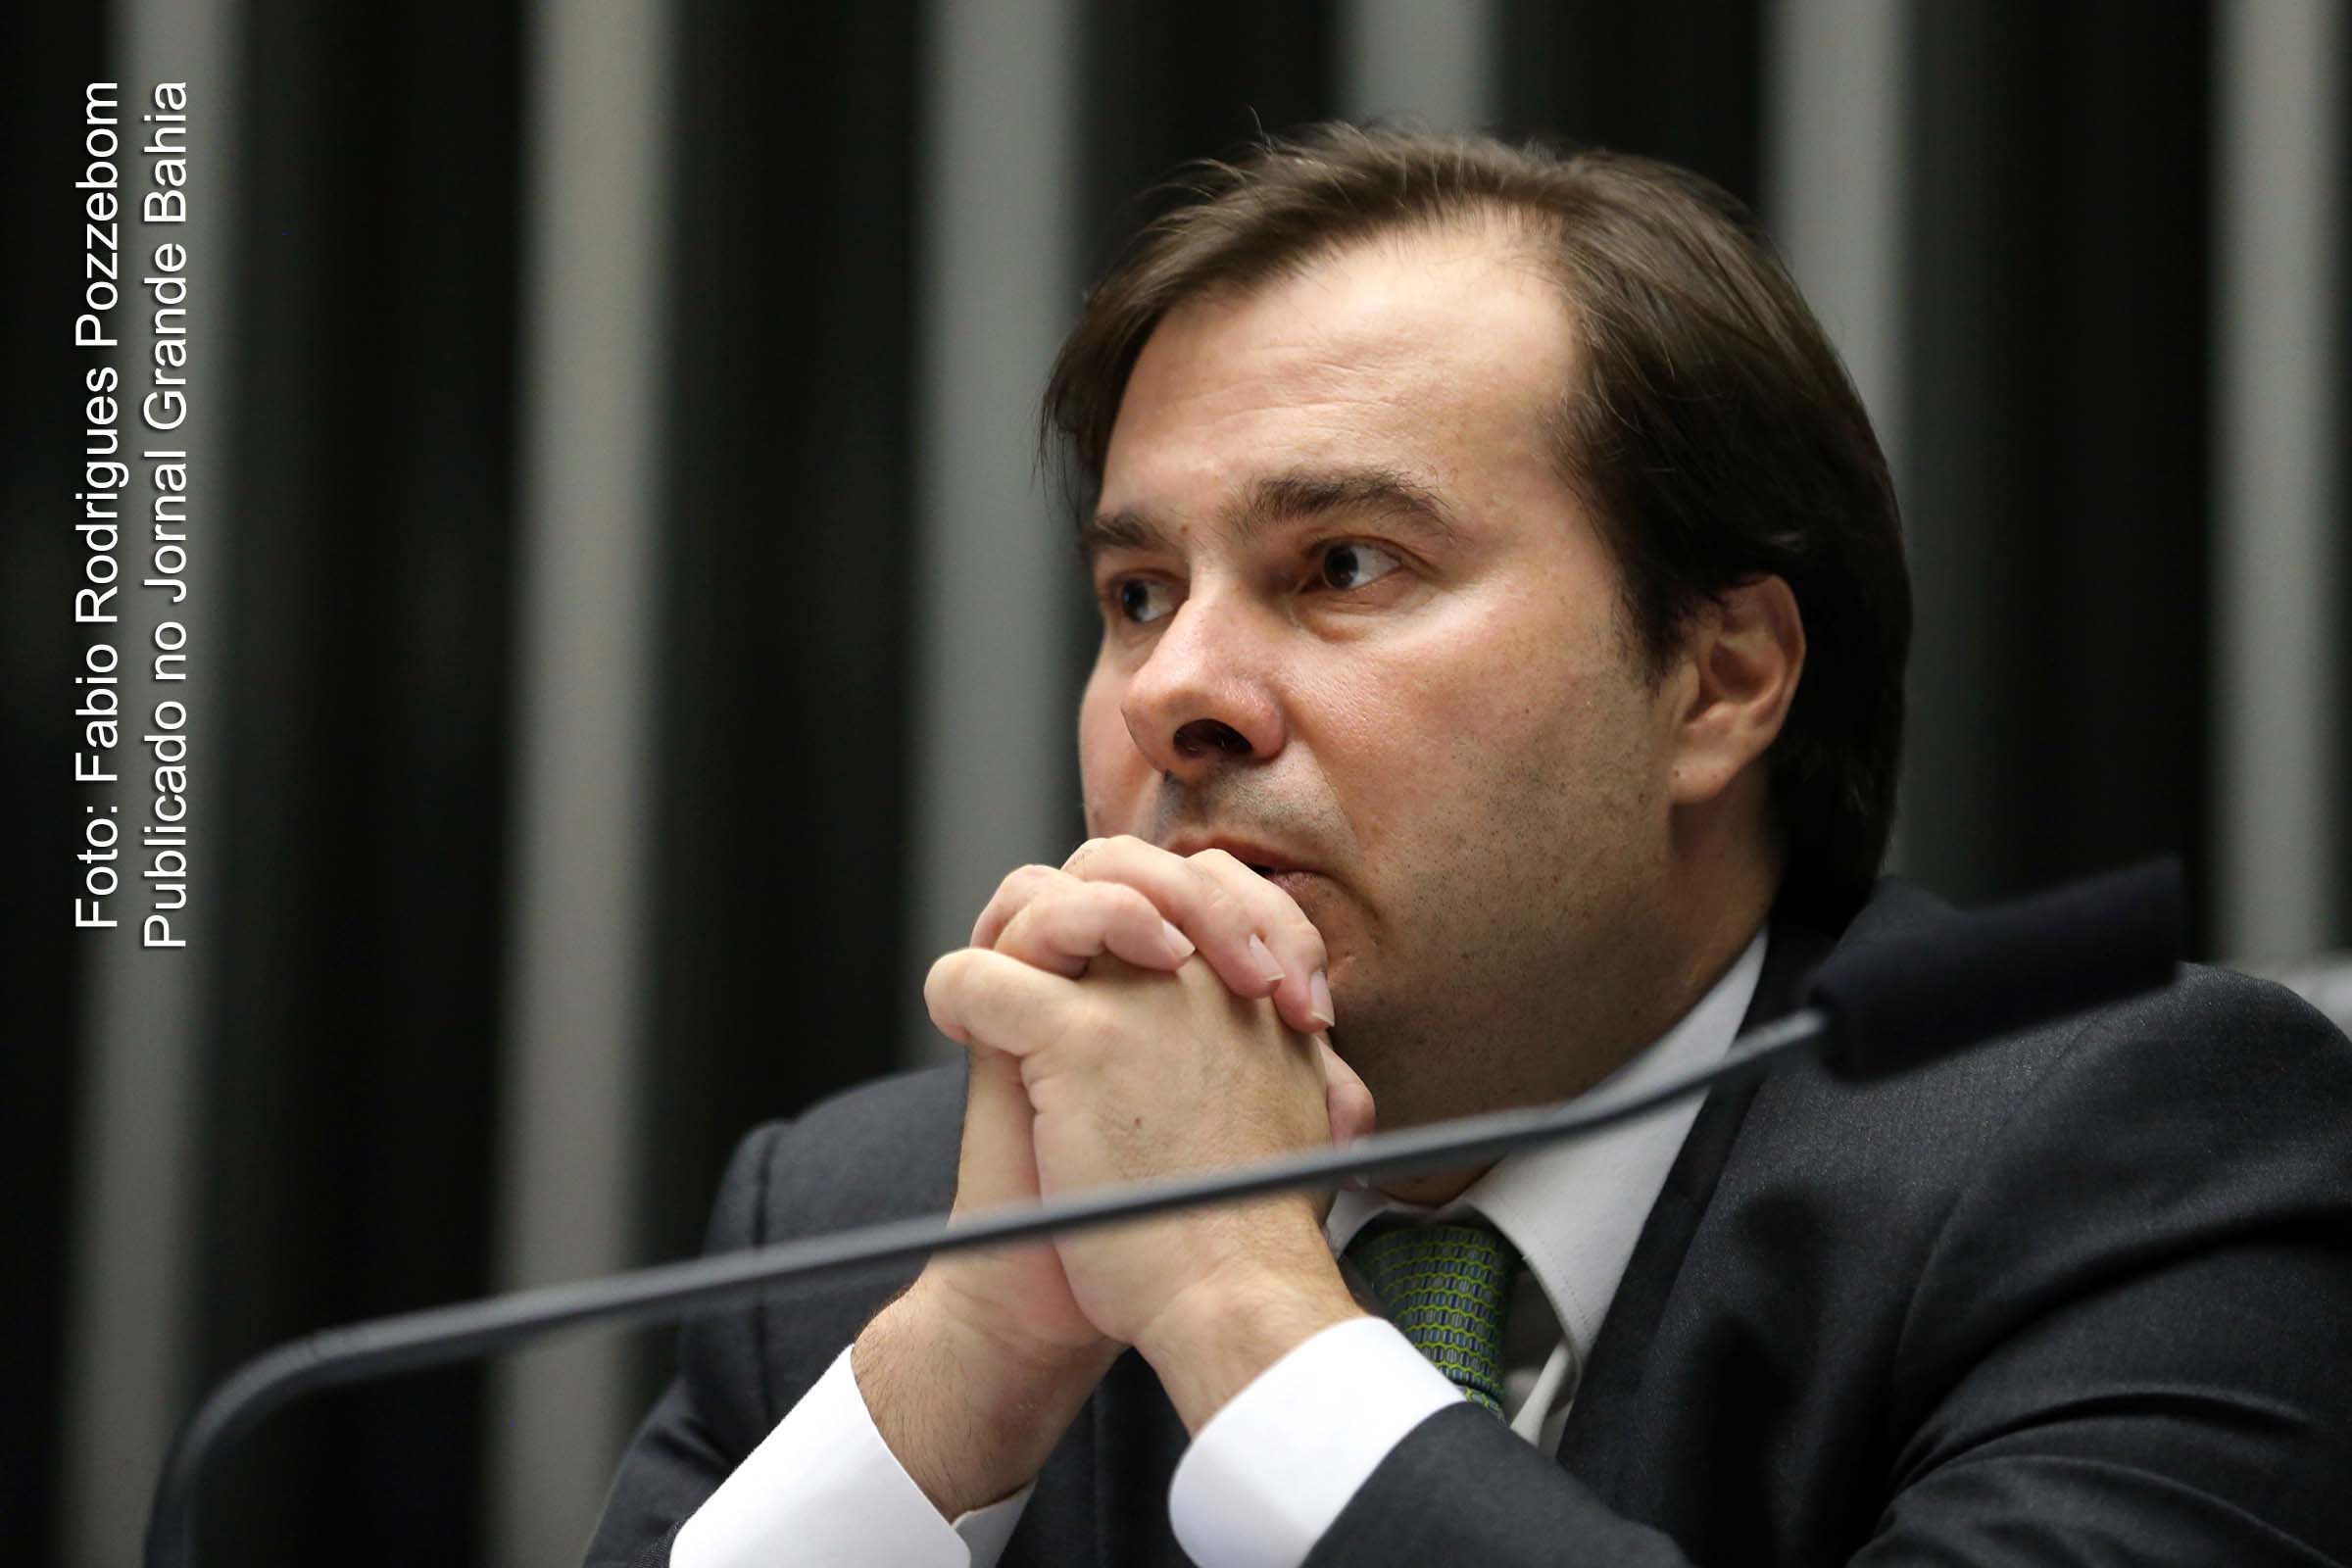 O presidente da Câmara dos Deputados, Rodrigo Maia, defende o financiamento público, juntamente com a lista fechada.